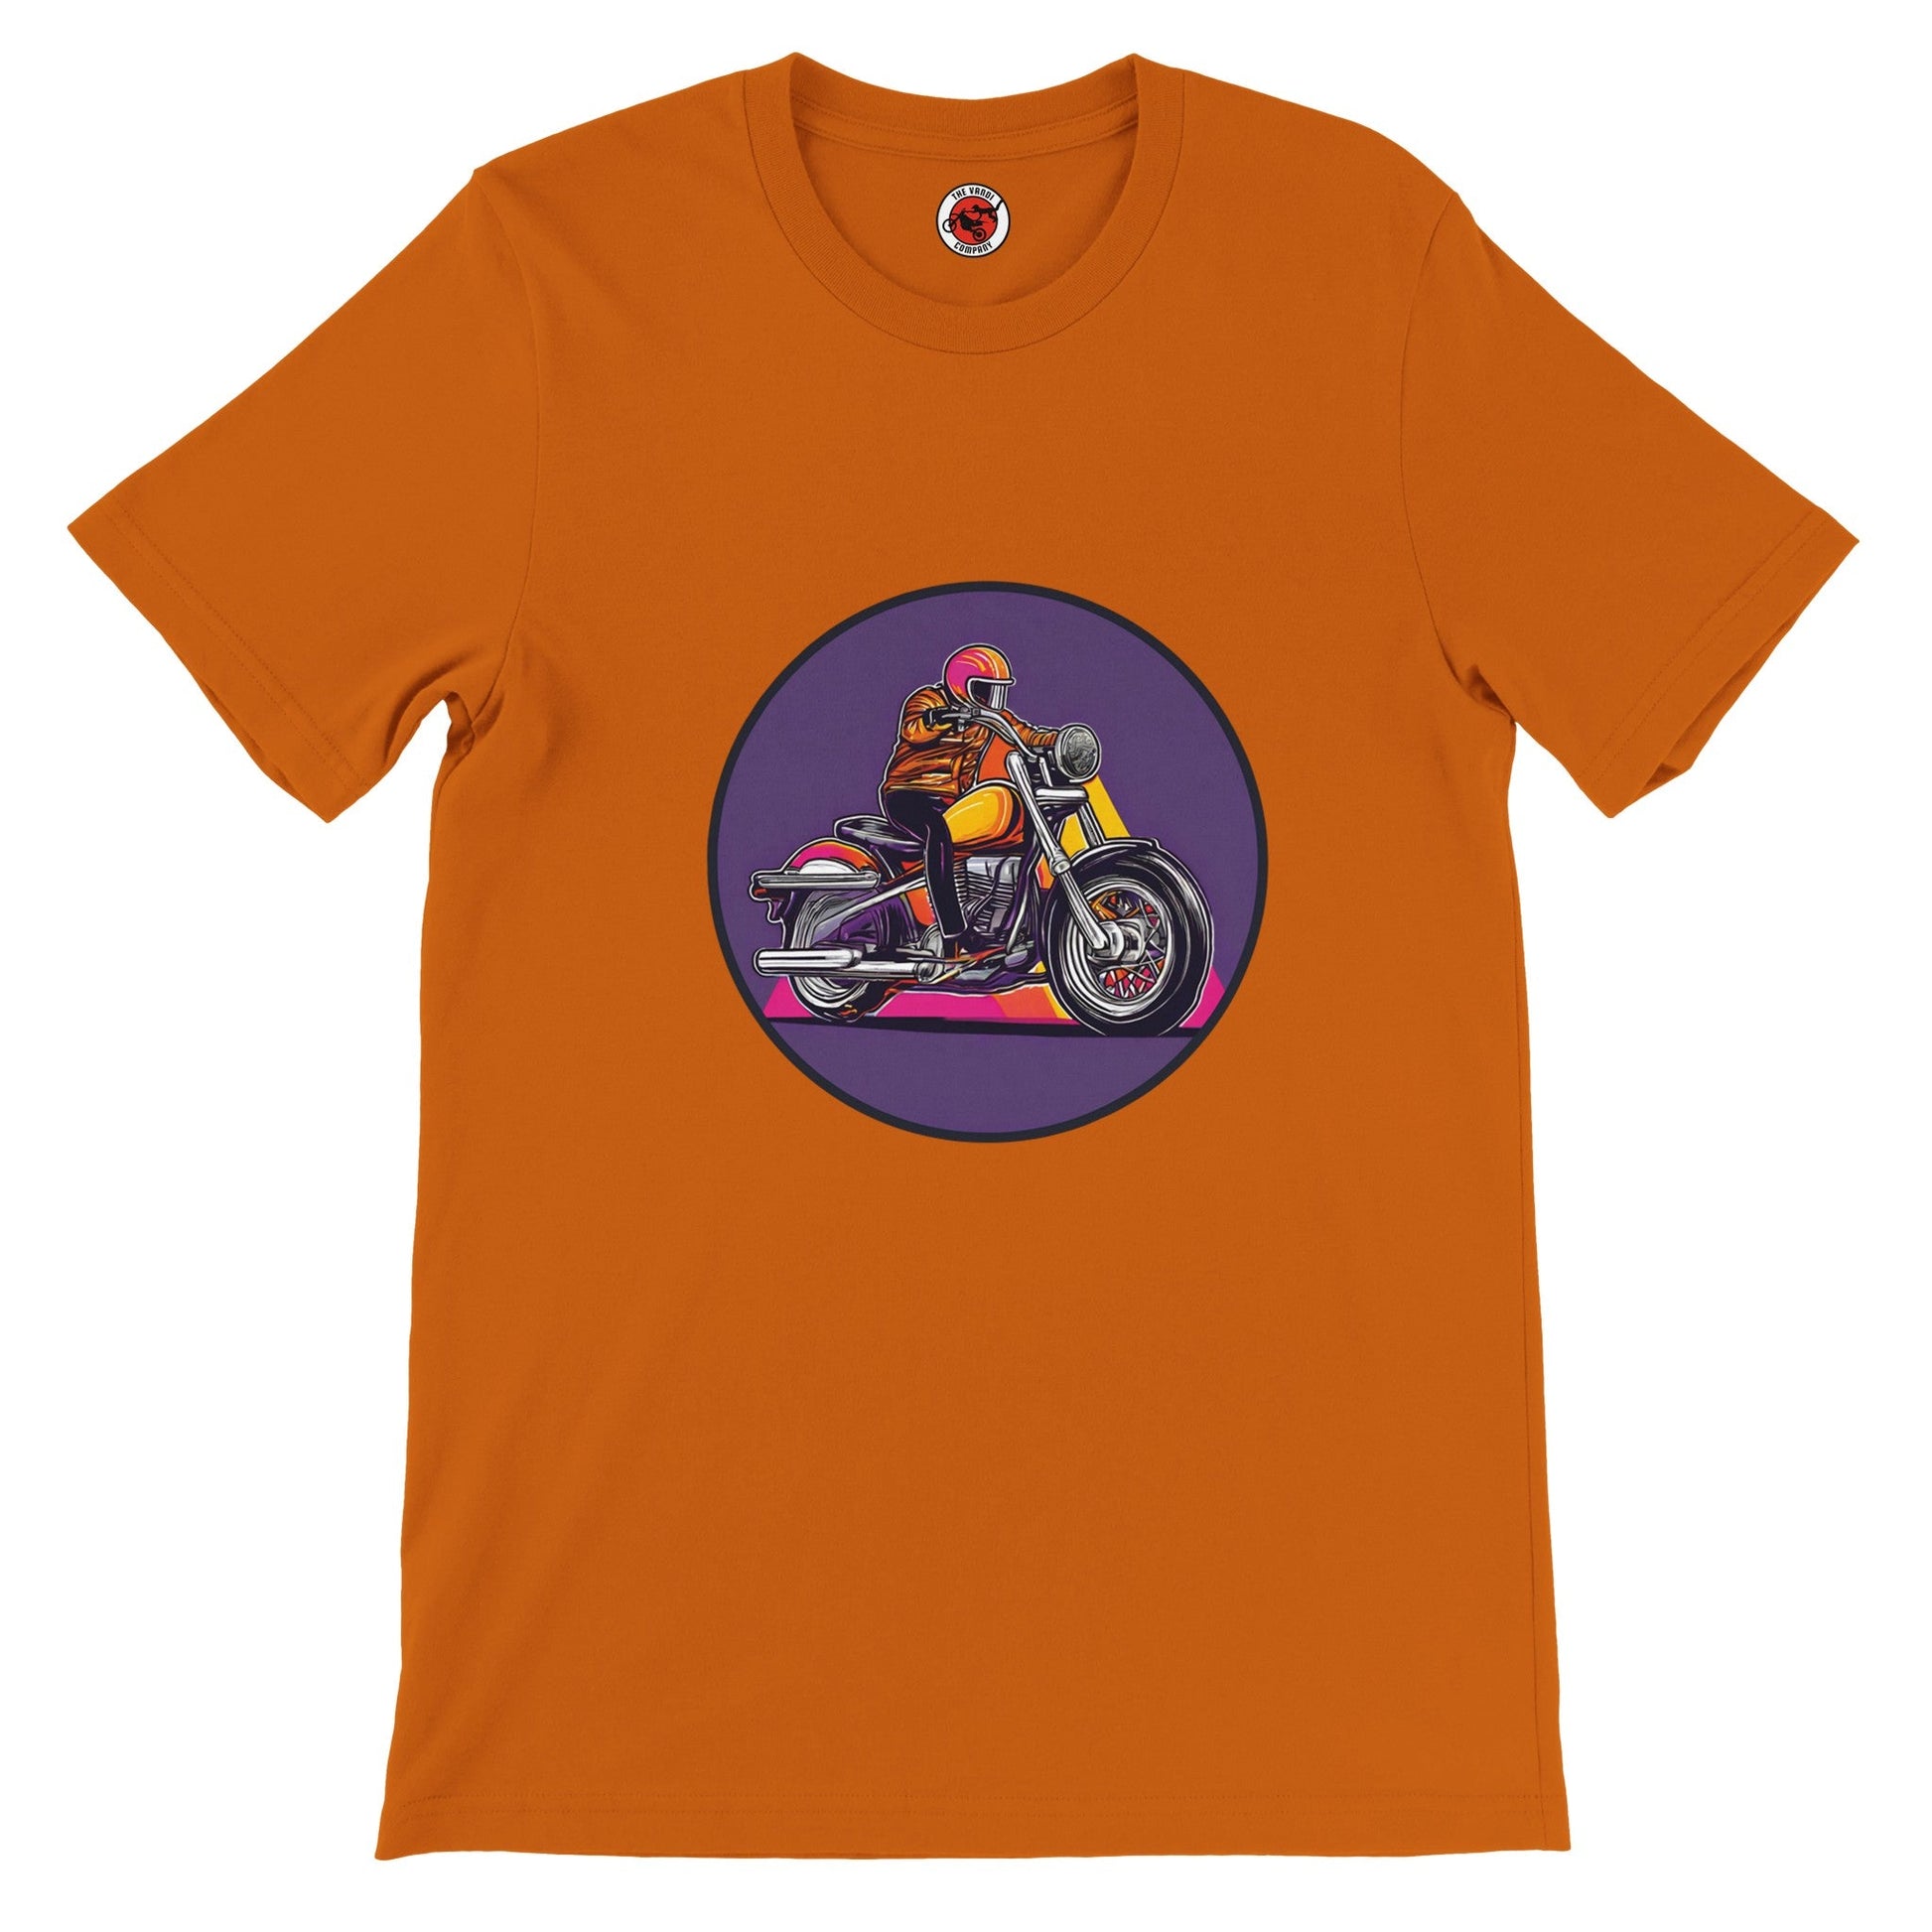 Men's Premium Crewneck T-shirt - Ride - The Vandi Company